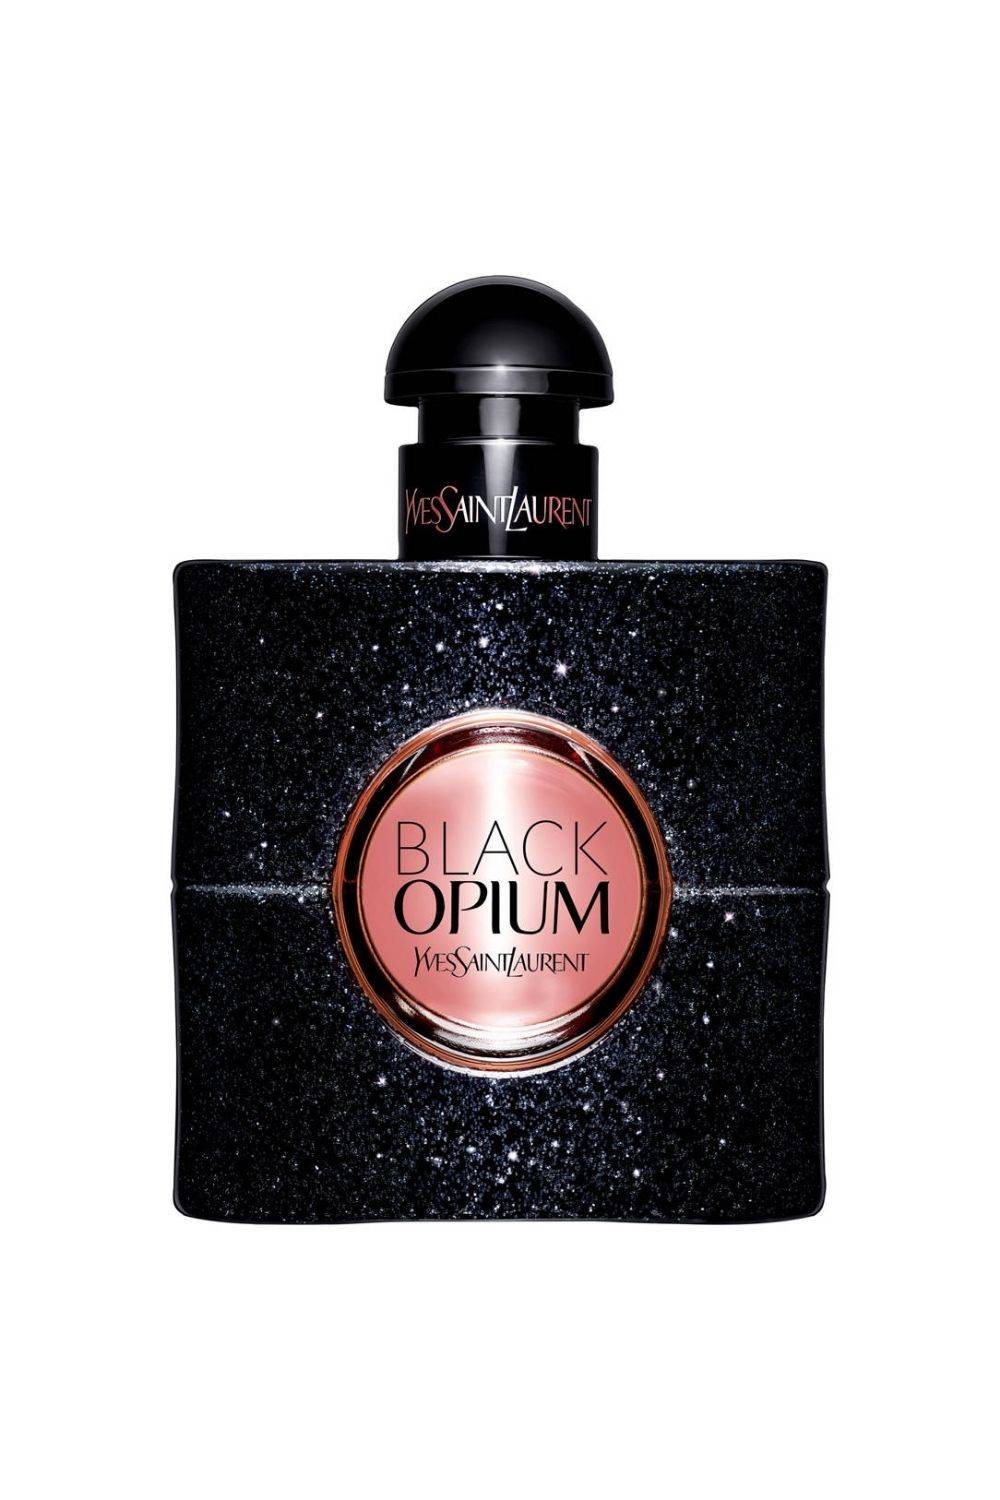 Perfumes que dejan huella: Black Opium de Yves Saint Laurent